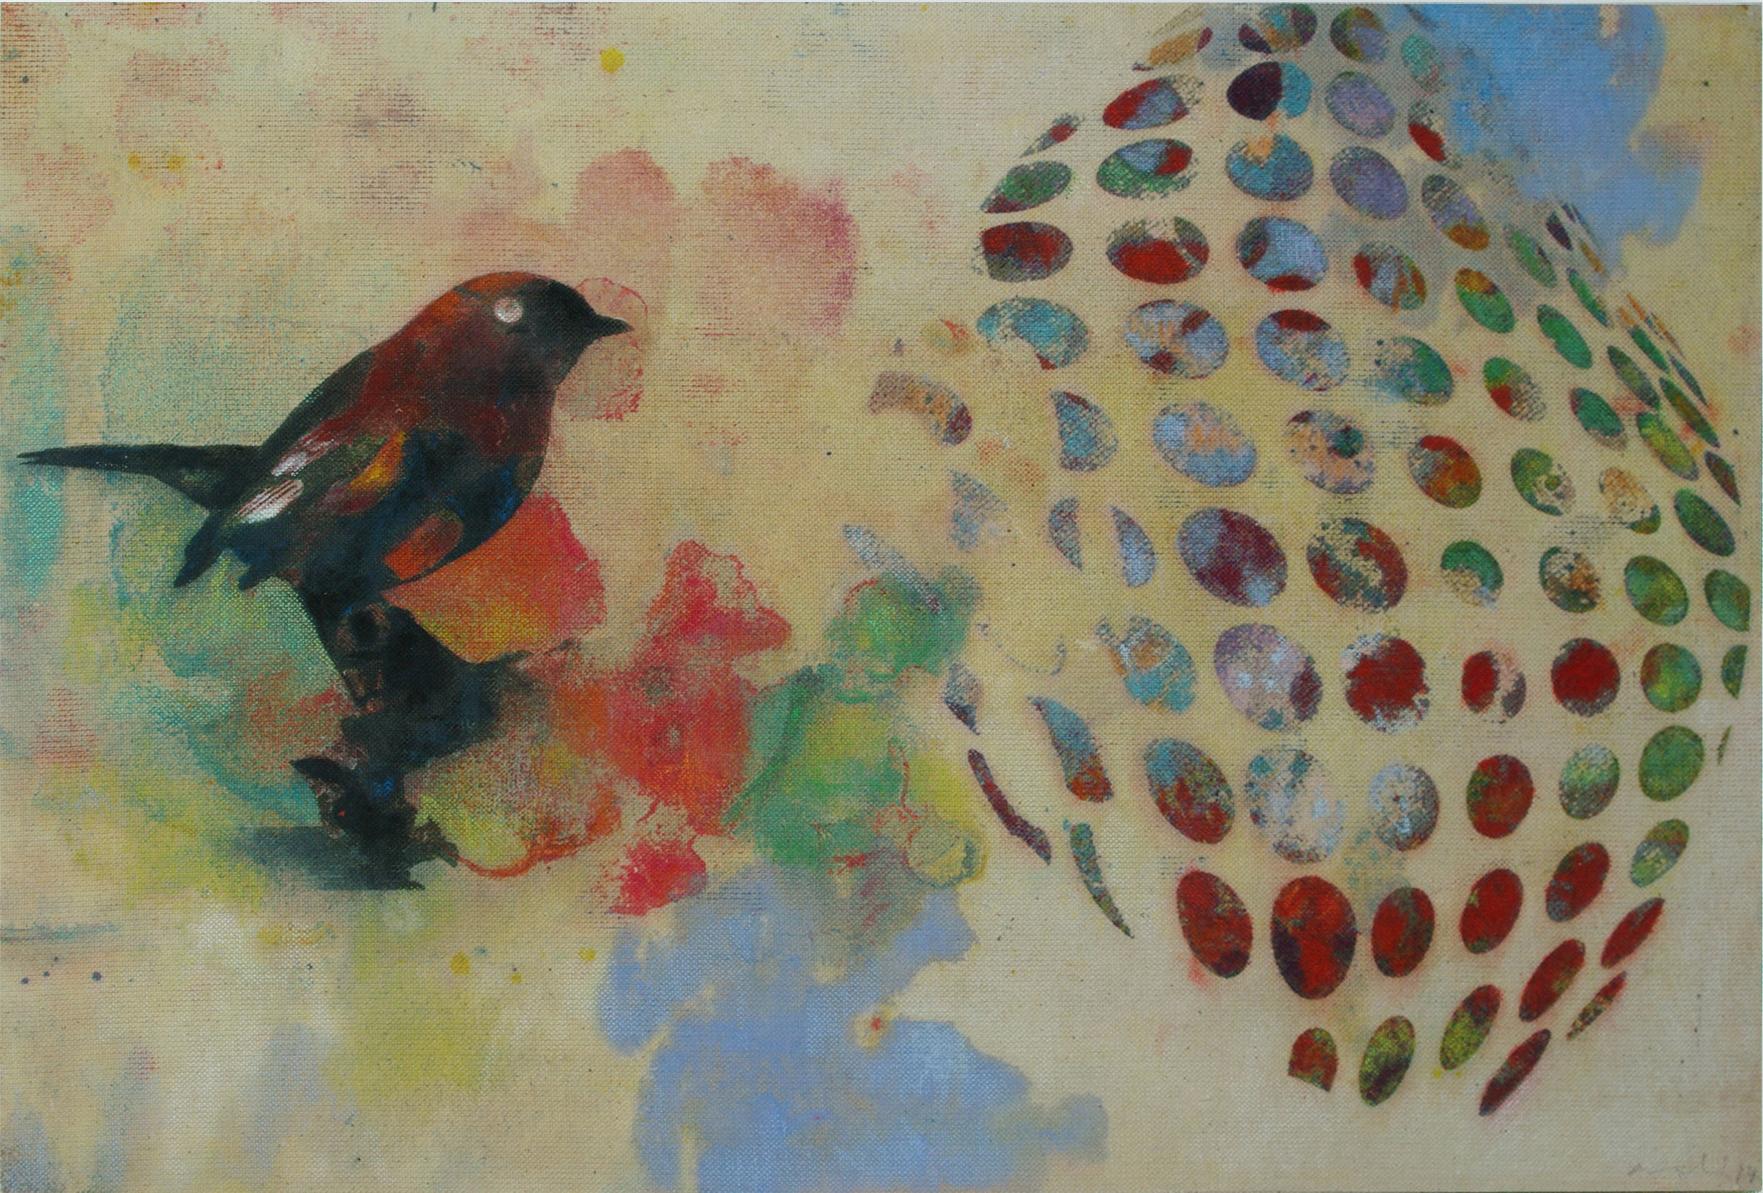 Oiseaux contemporains 023- Contemporain, abstrait, expressionniste, moderne, art urbain, surréaliste